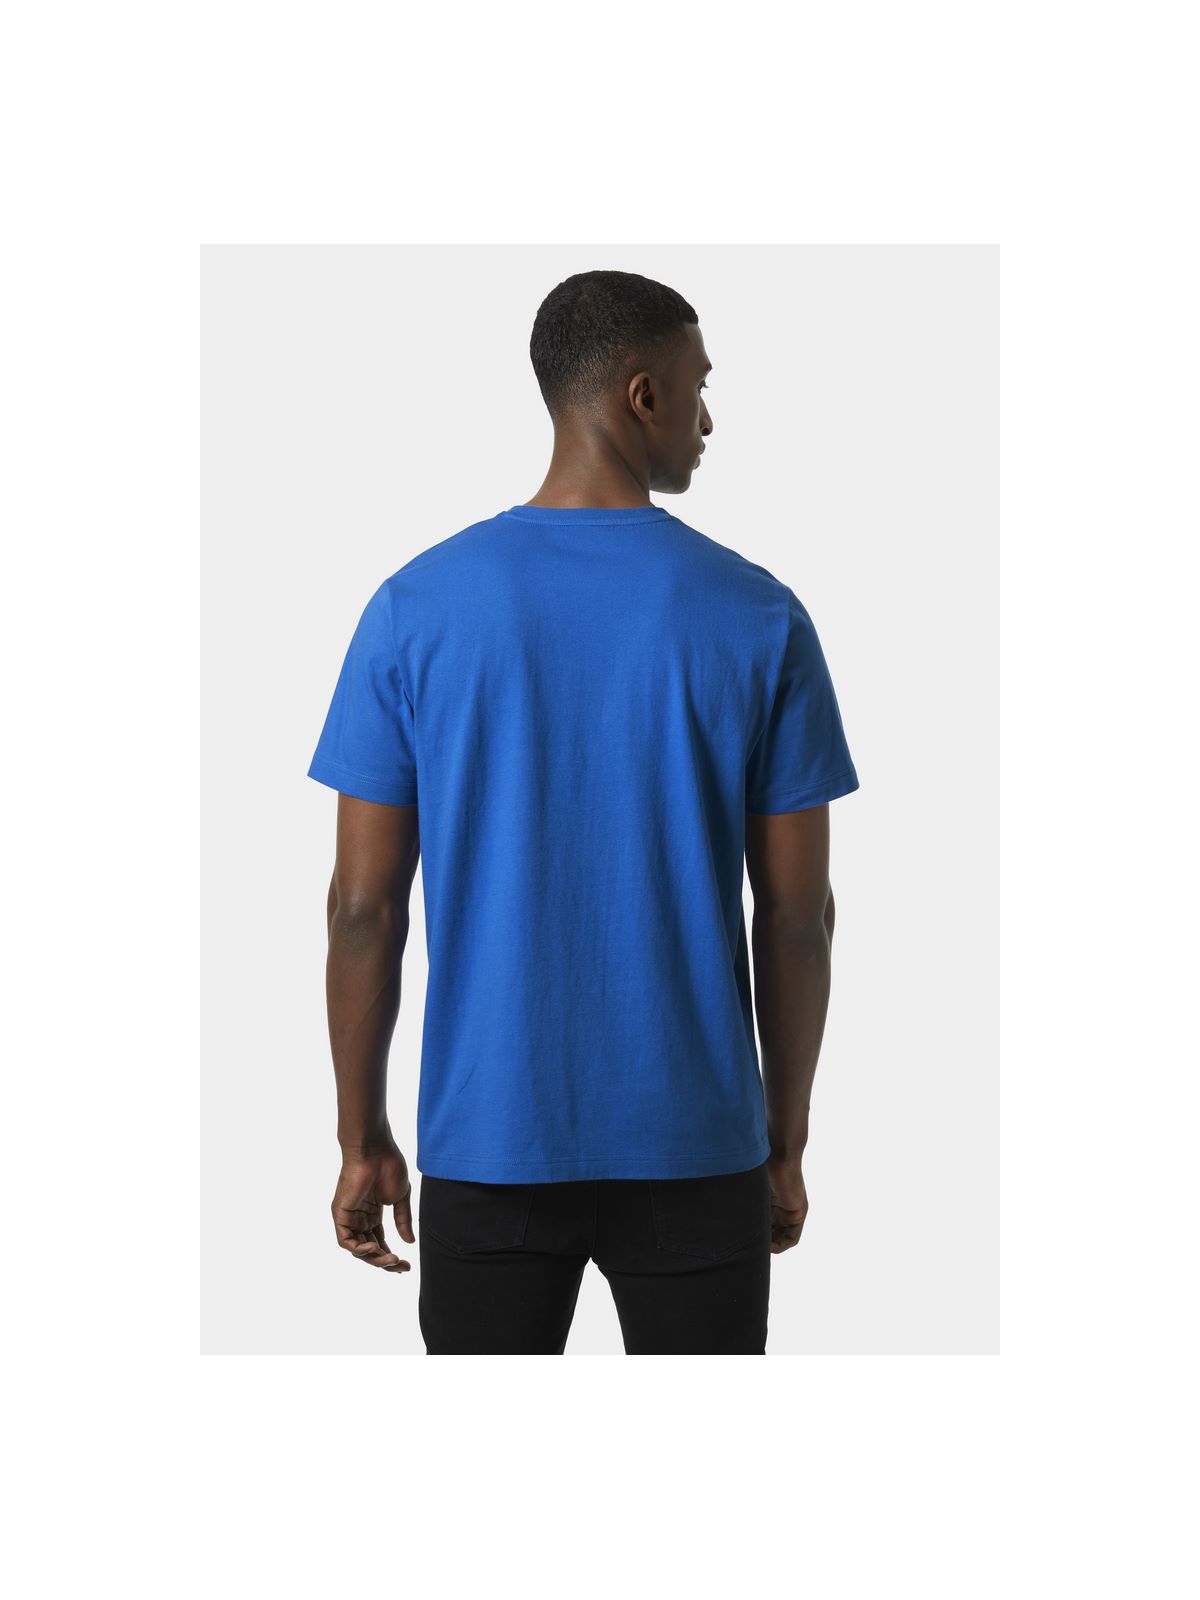 Koszulka HELLY HANSEN Core Graphic T niebieski